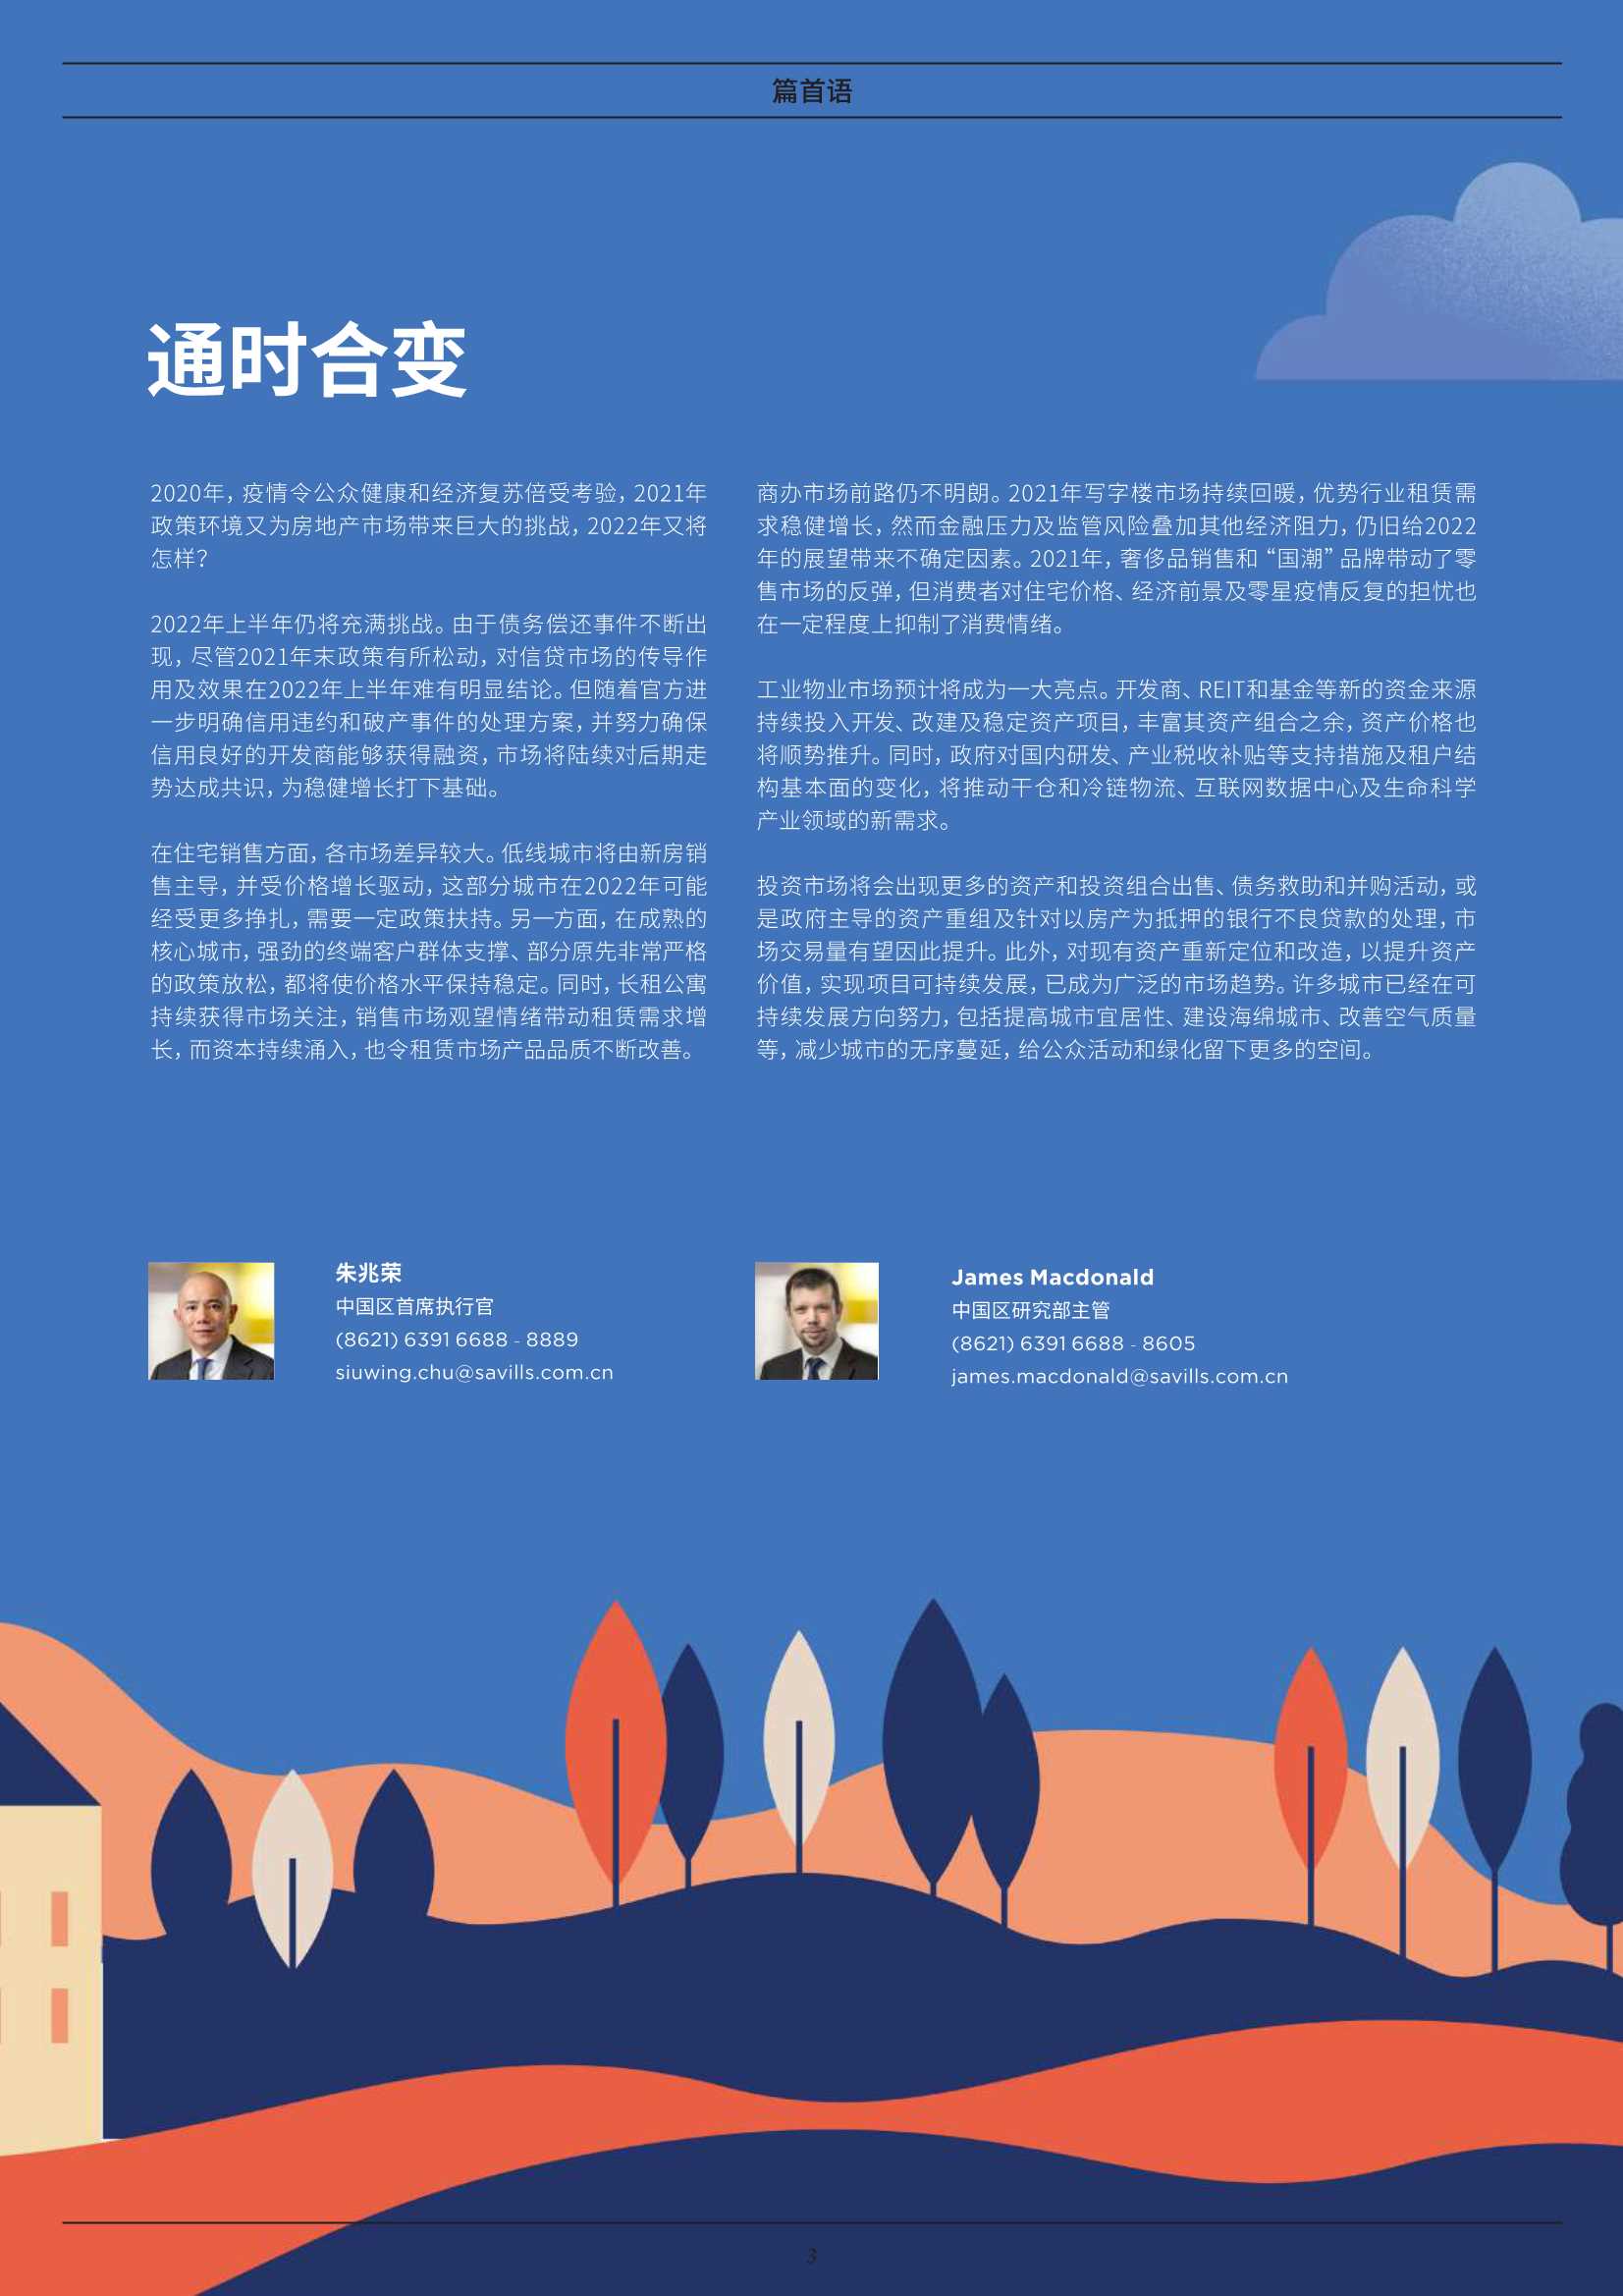 第一太平戴维斯-通时合变 2022中国房地产年度展望-2022.01-16页